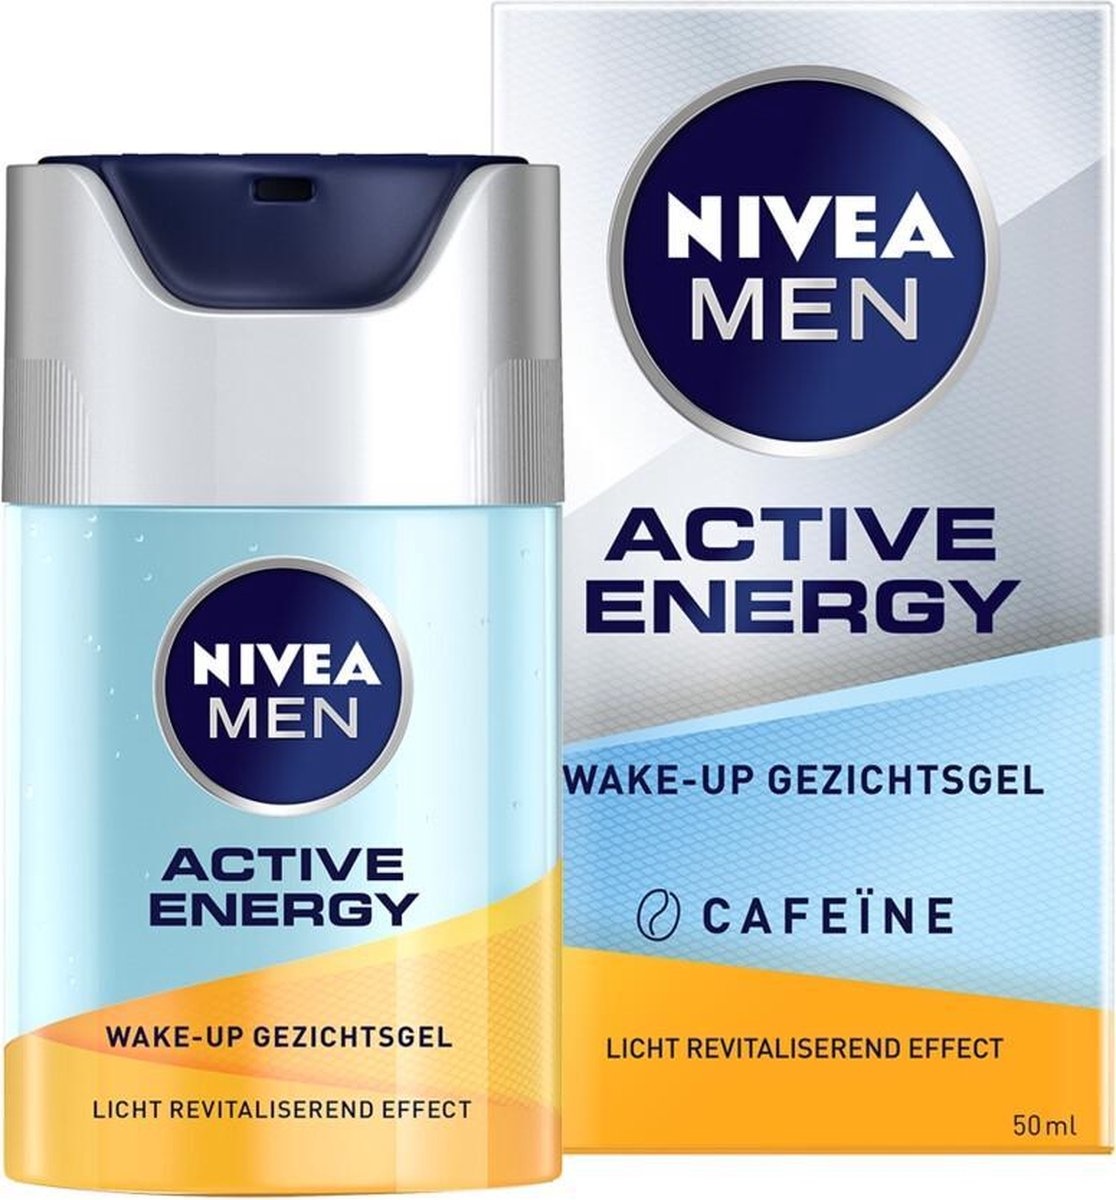 NIVEA MEN Active Energy Wake-up Gesichtsgel - 50 ml - Verpackung beschädigt